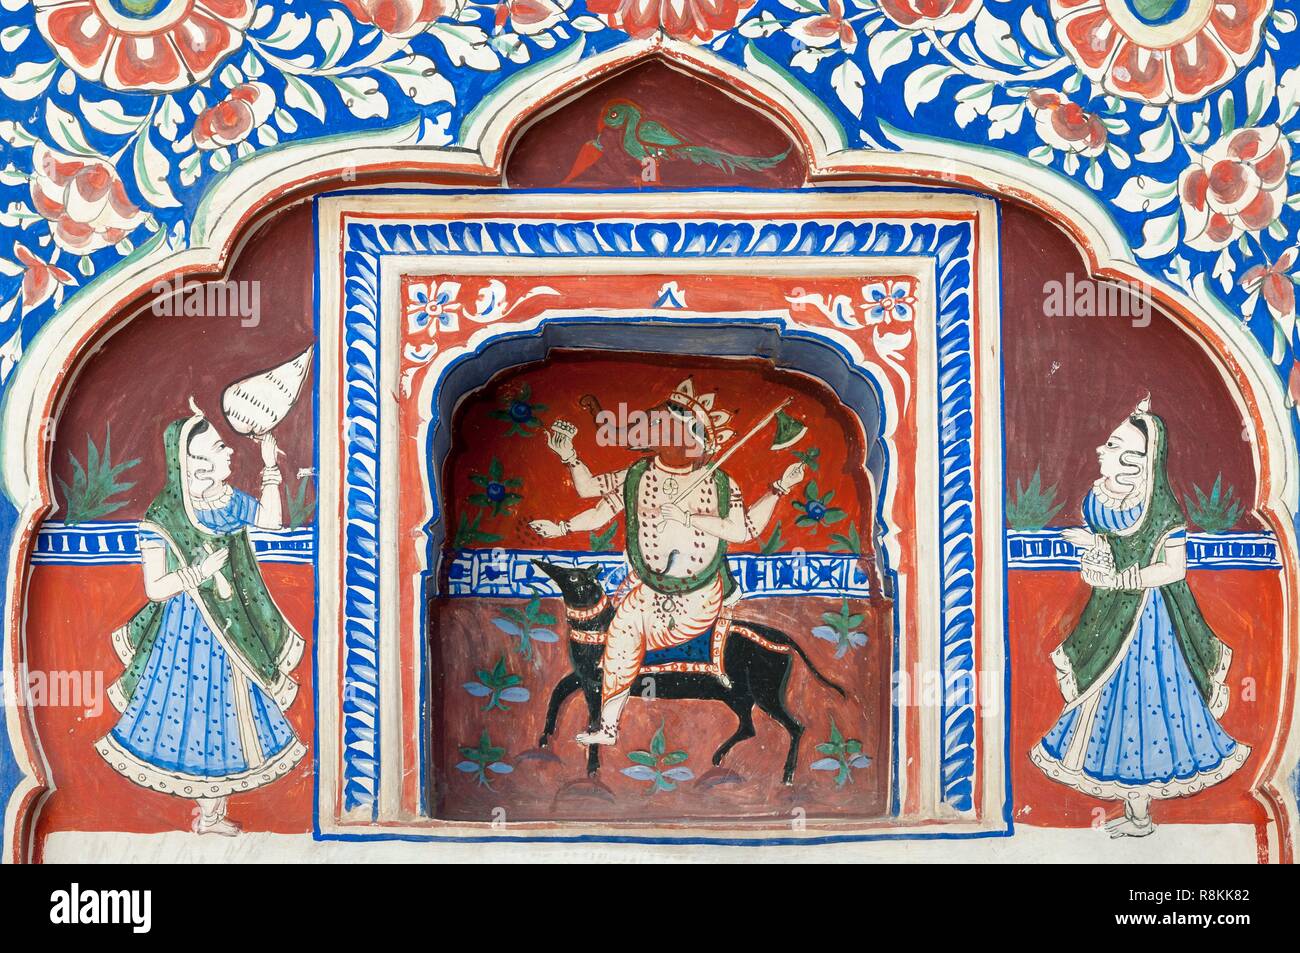 La India, el estado de Rajasthan, Nawalgarh, mural dentro de un haveli, una casa tradicional, dios hindú Ghanesa Foto de stock